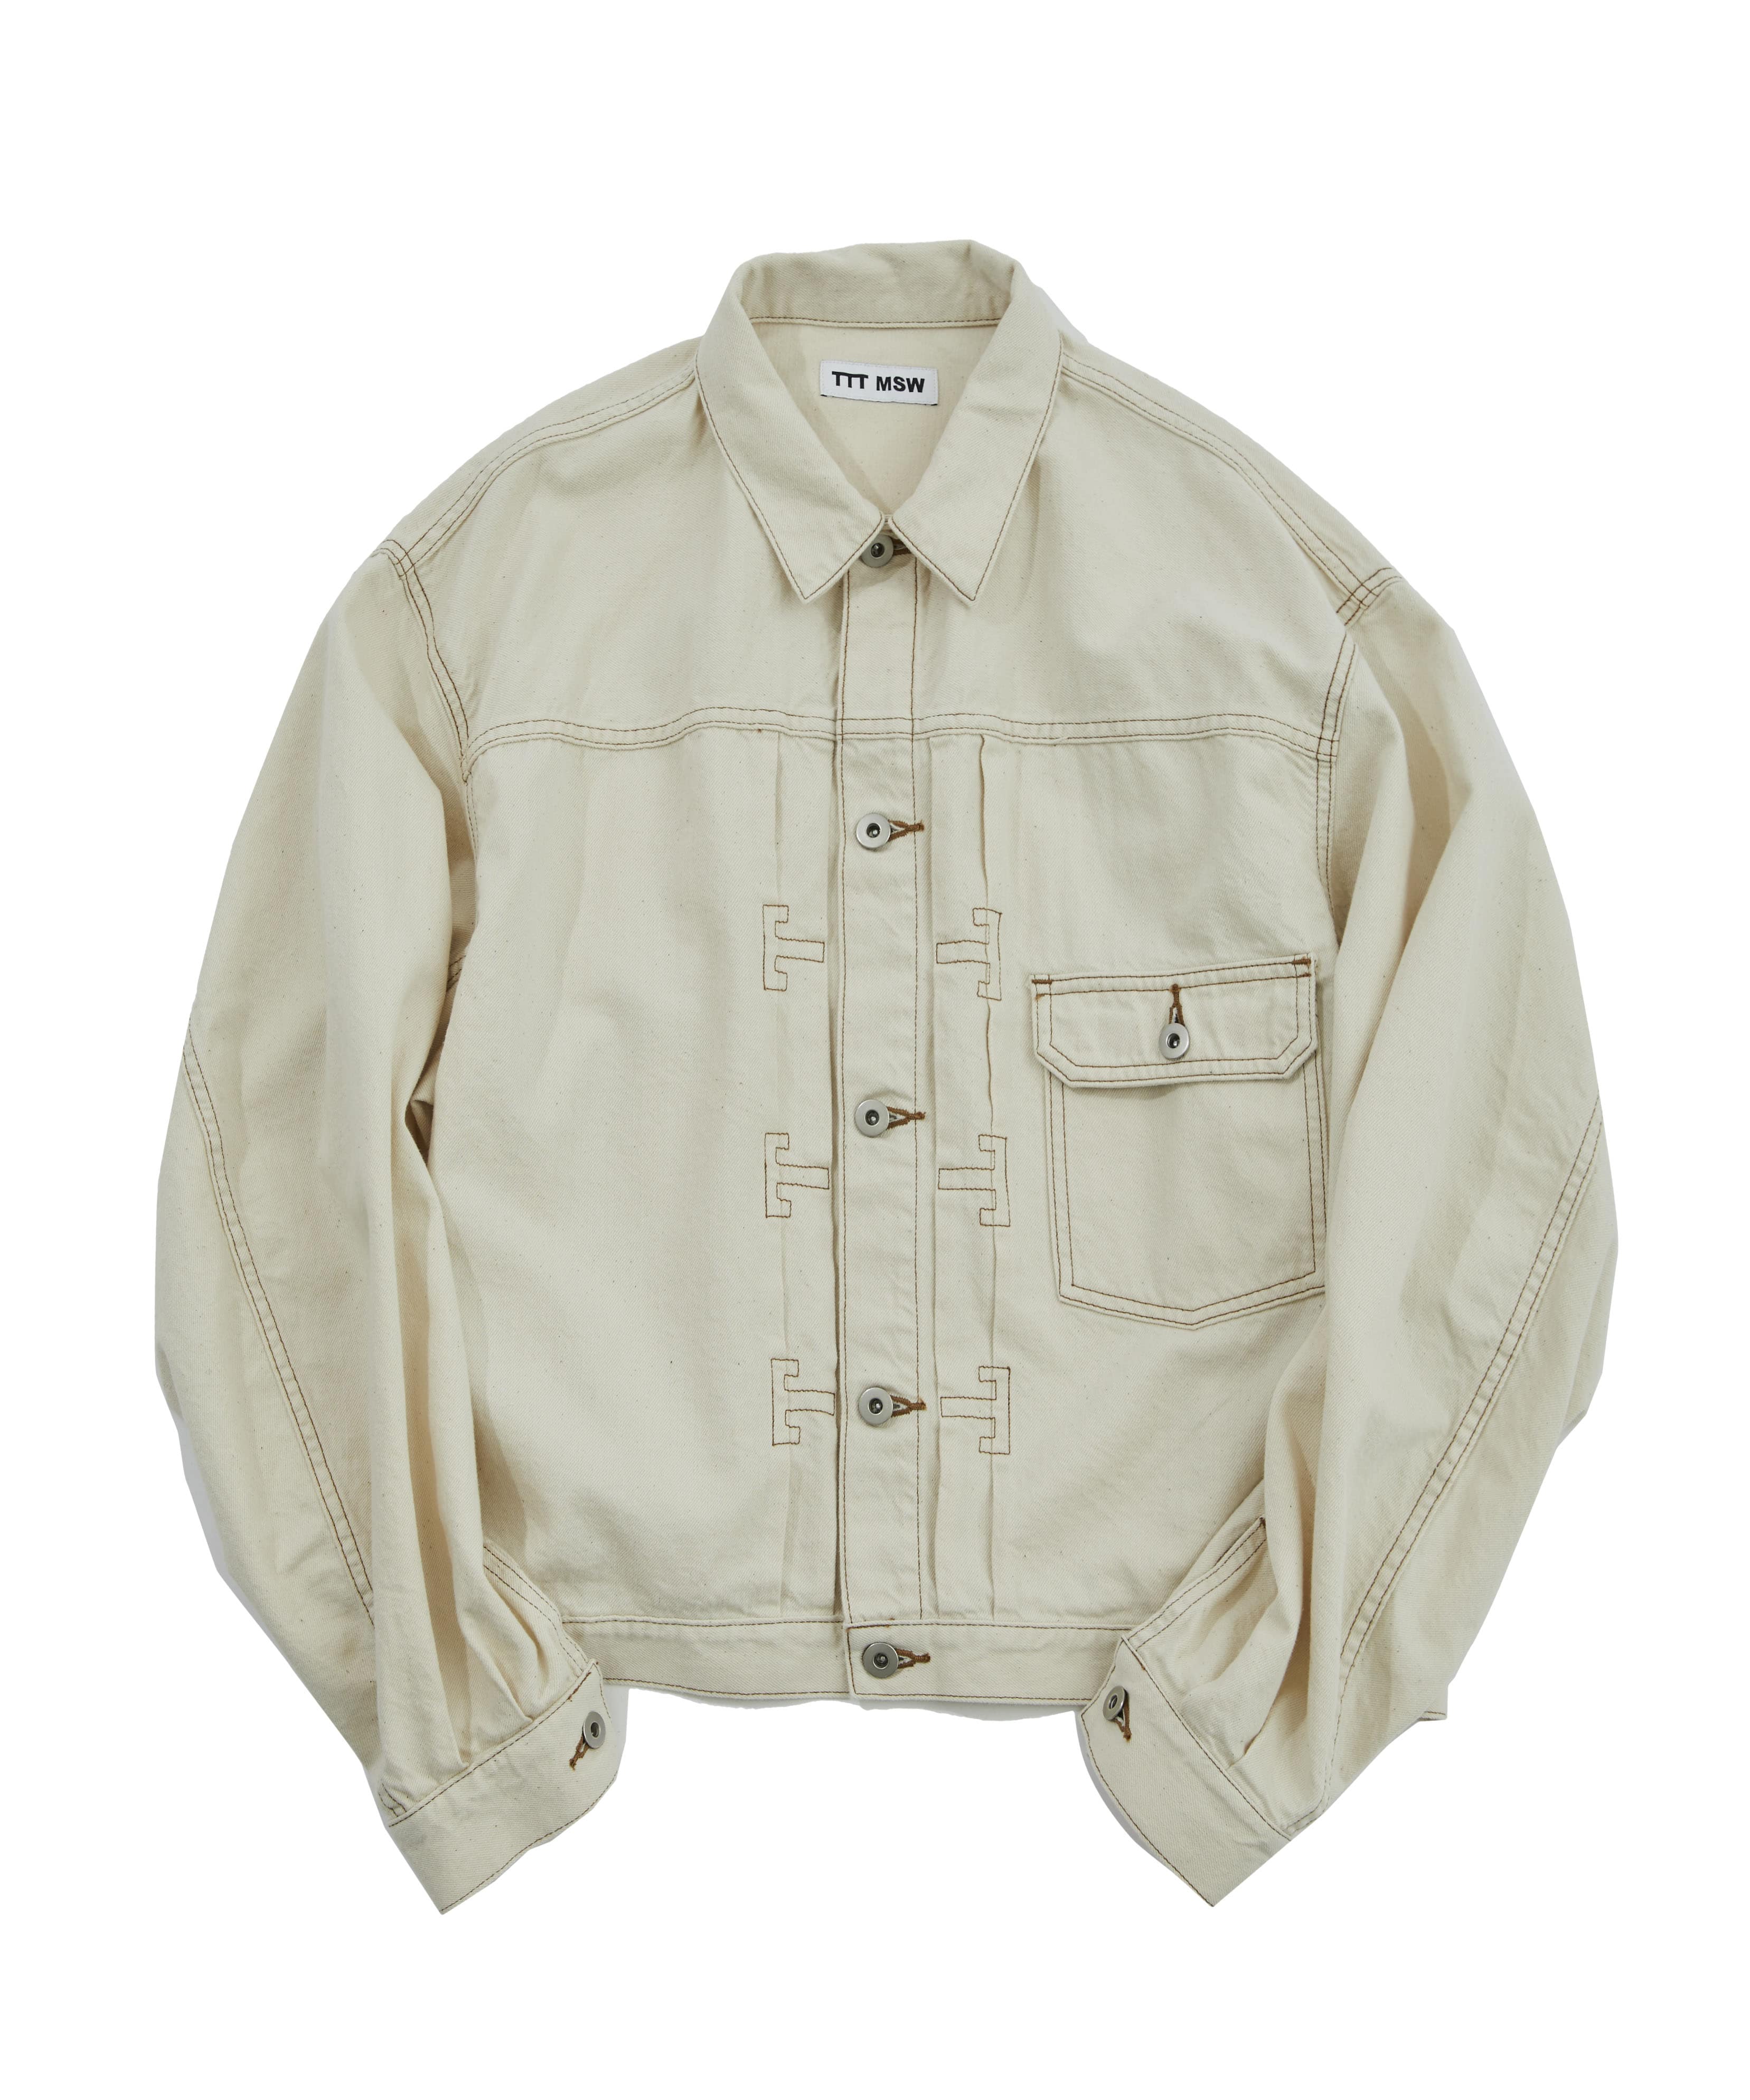 Organic cotton denim jacket   TTT MSW